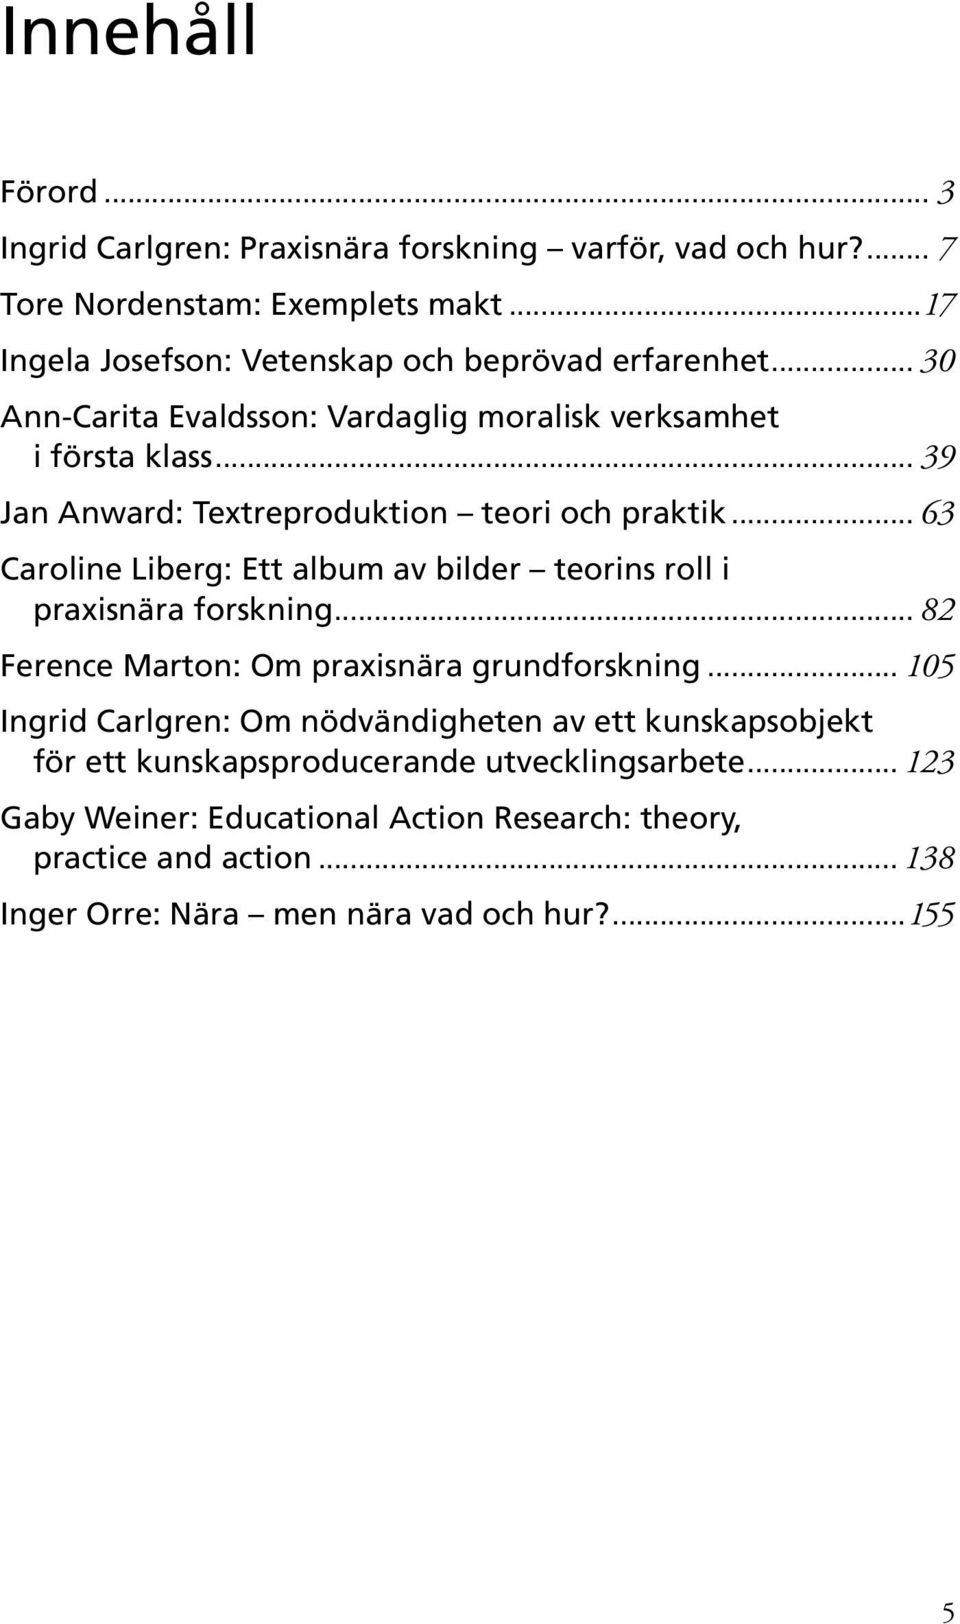 .. 39 Jan Anward: Textreproduktion teori och praktik... 63 Caroline Liberg: Ett album av bilder teorins roll i praxisnära forskning.